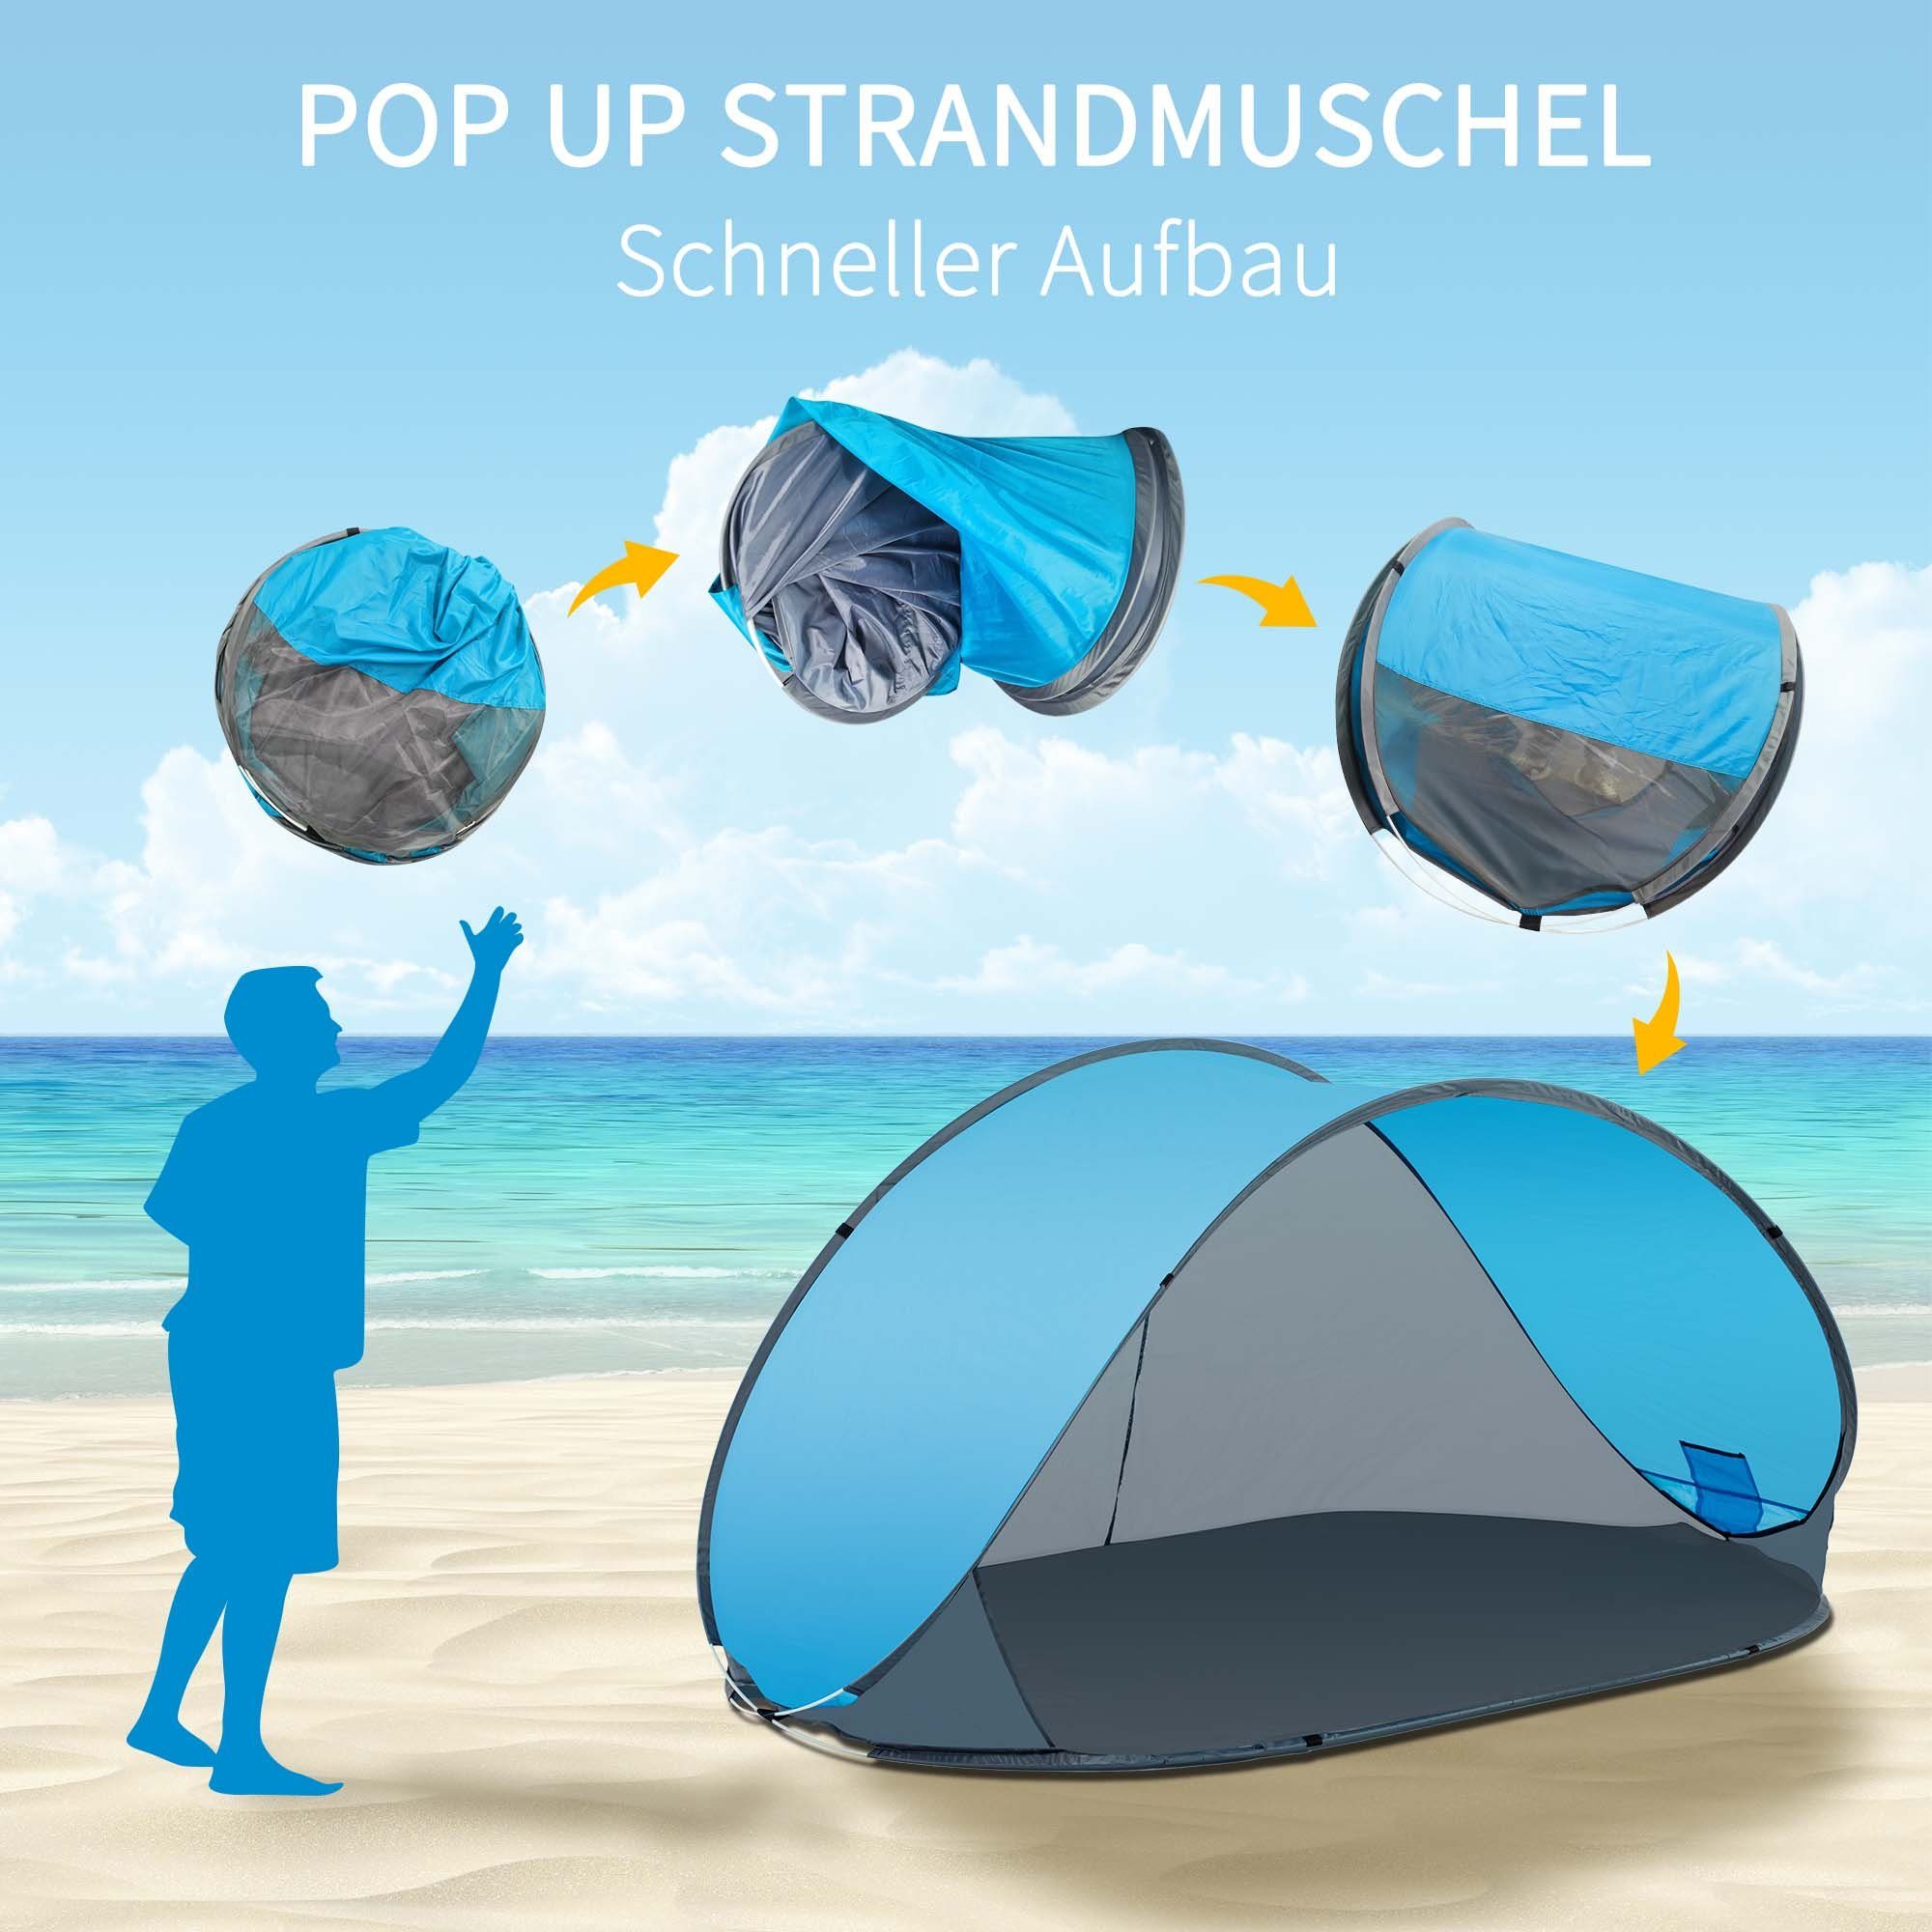 Zelt Sichtschutz Duhome Strandmuschel, und Wetter- Strandmuschel Strandzelt Pop Grau+Blau Up Polyester